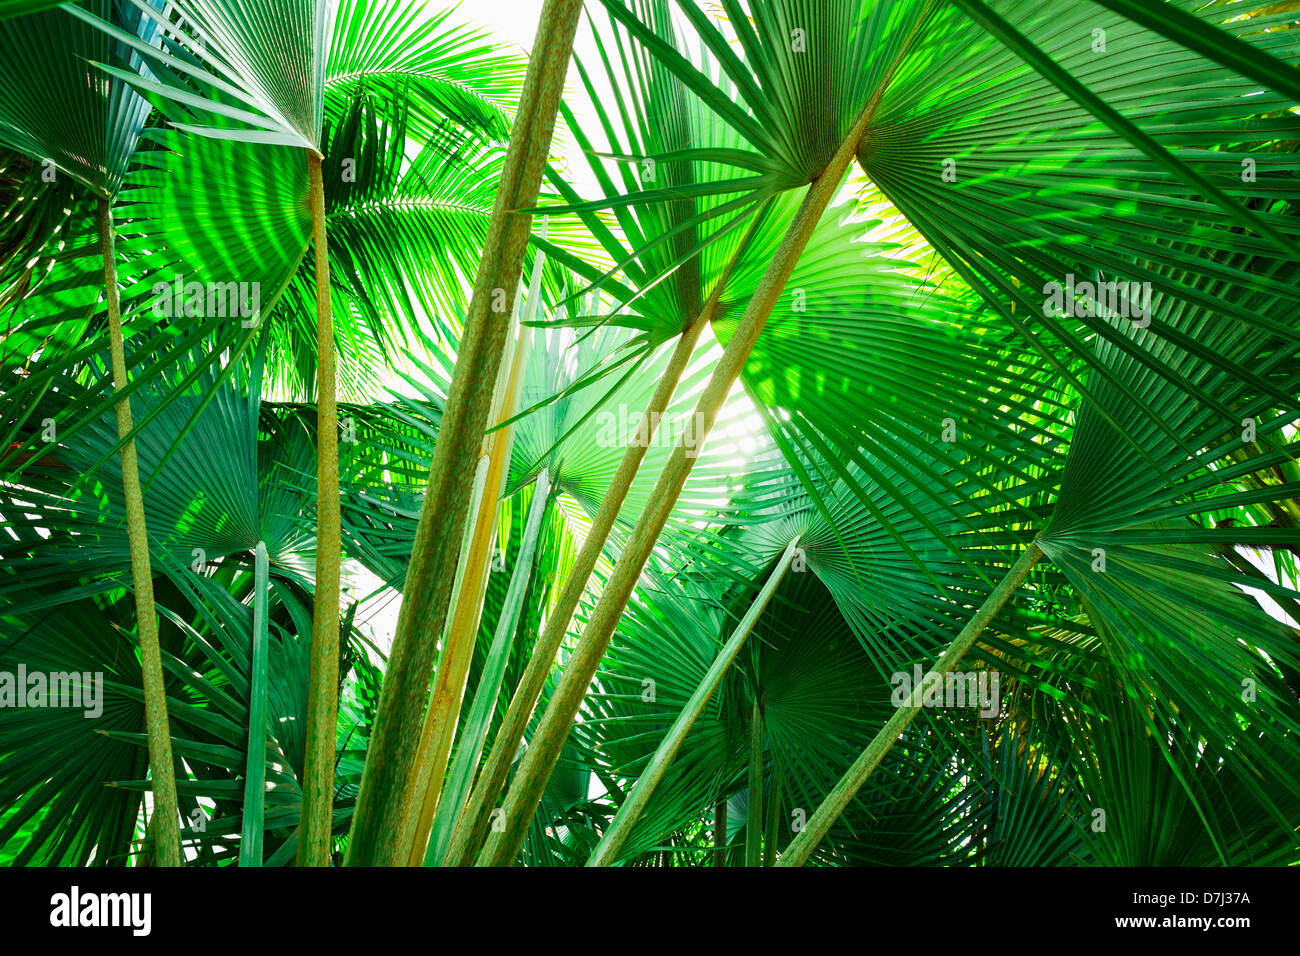 La Jamaïque, feuilles de palmier Banque D'Images